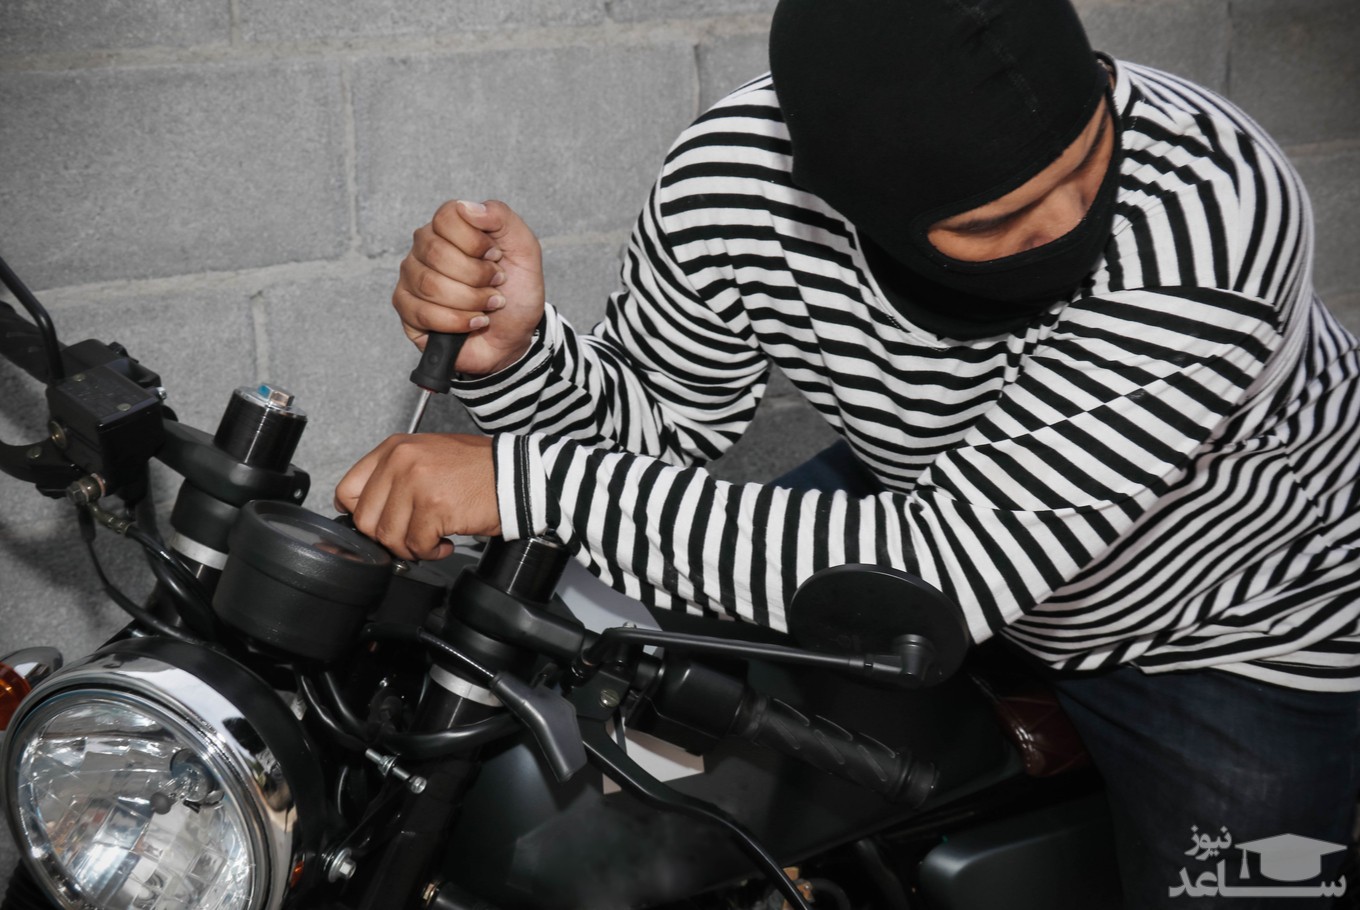 سرقت موتور سیکلت چه مجازاتی دارد؟